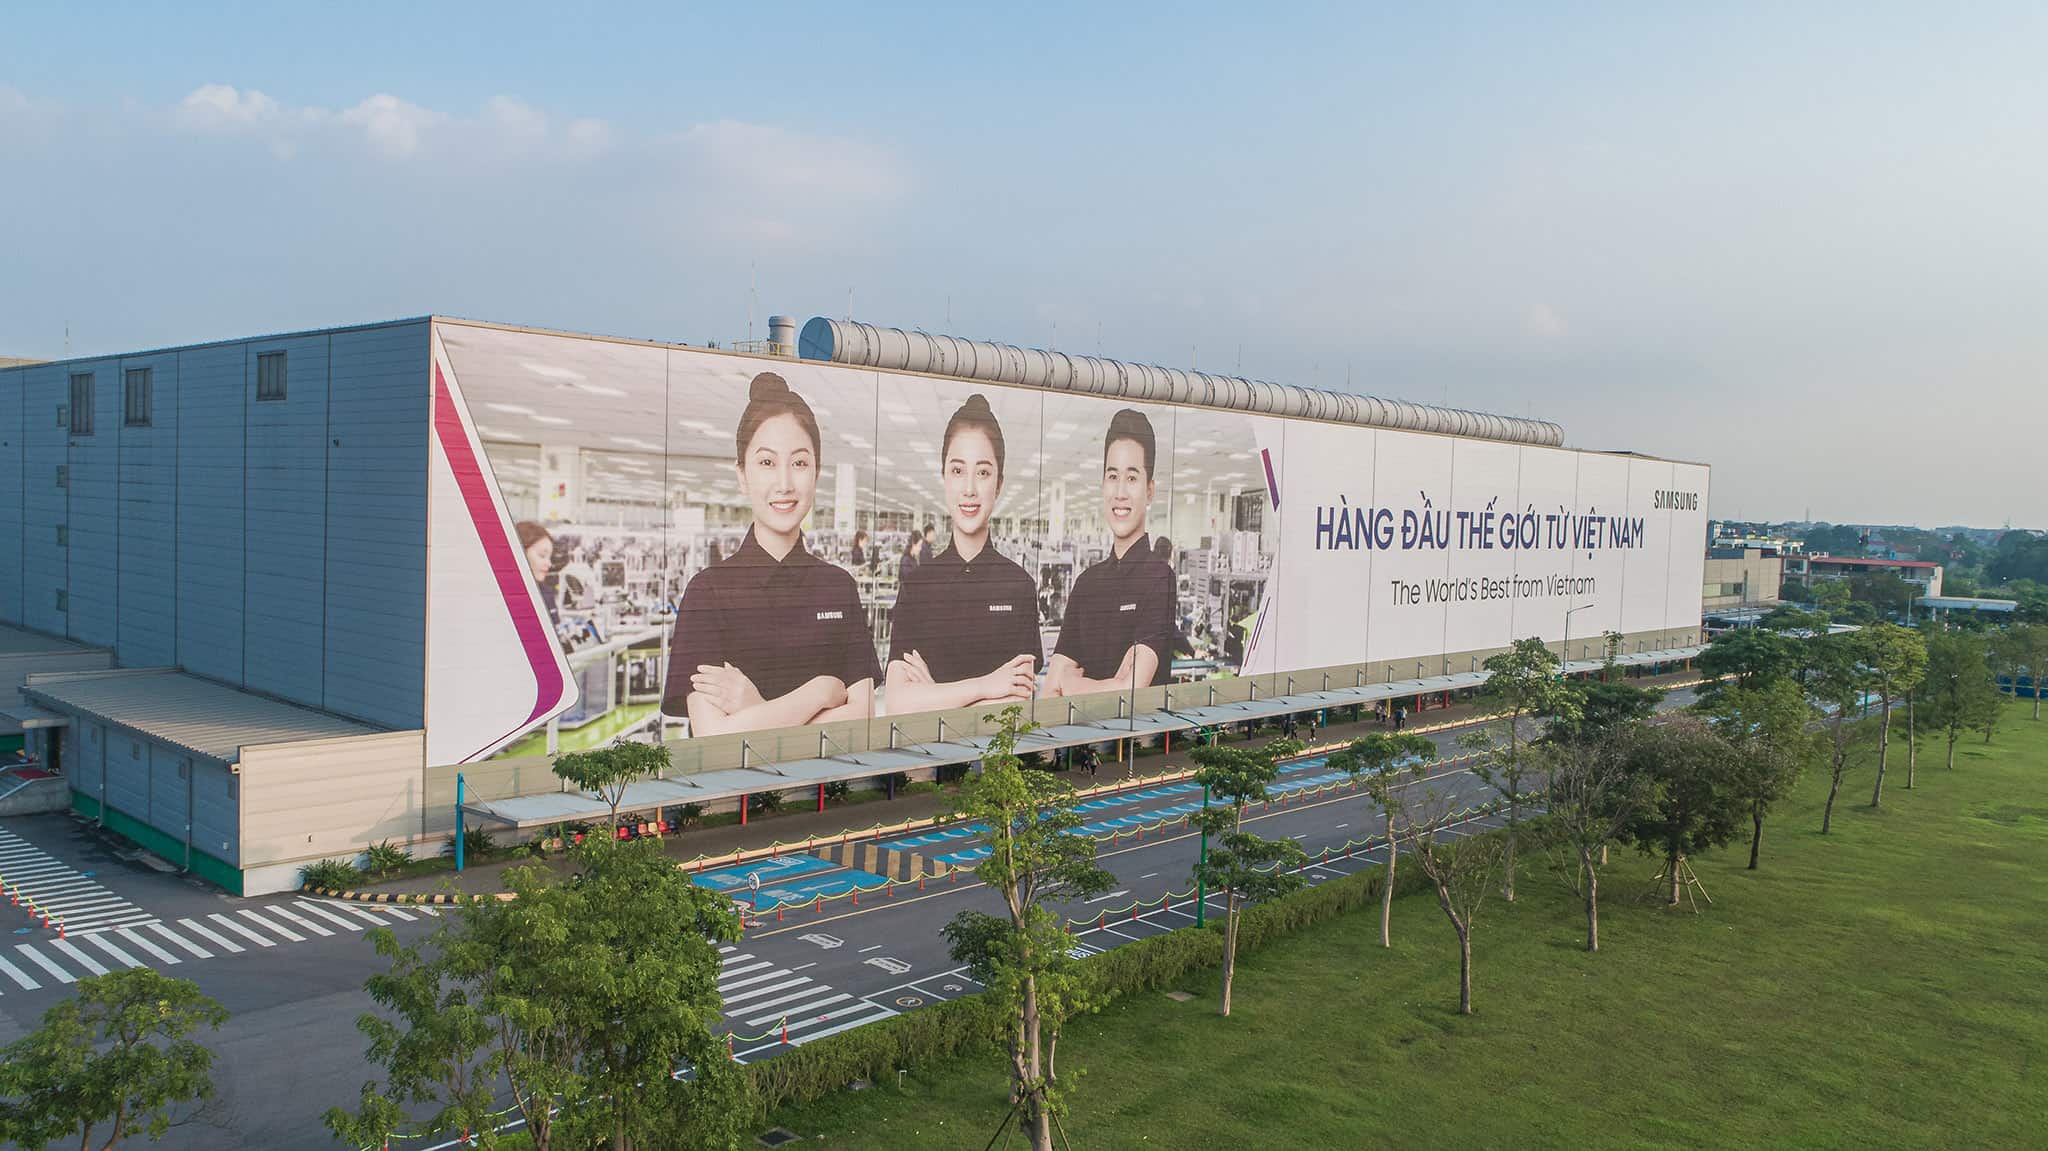 삼성은 2013년부터 Thai Nguyen 공장에 투자해 현재까지 투자금을 75억 달러로 확대했다.